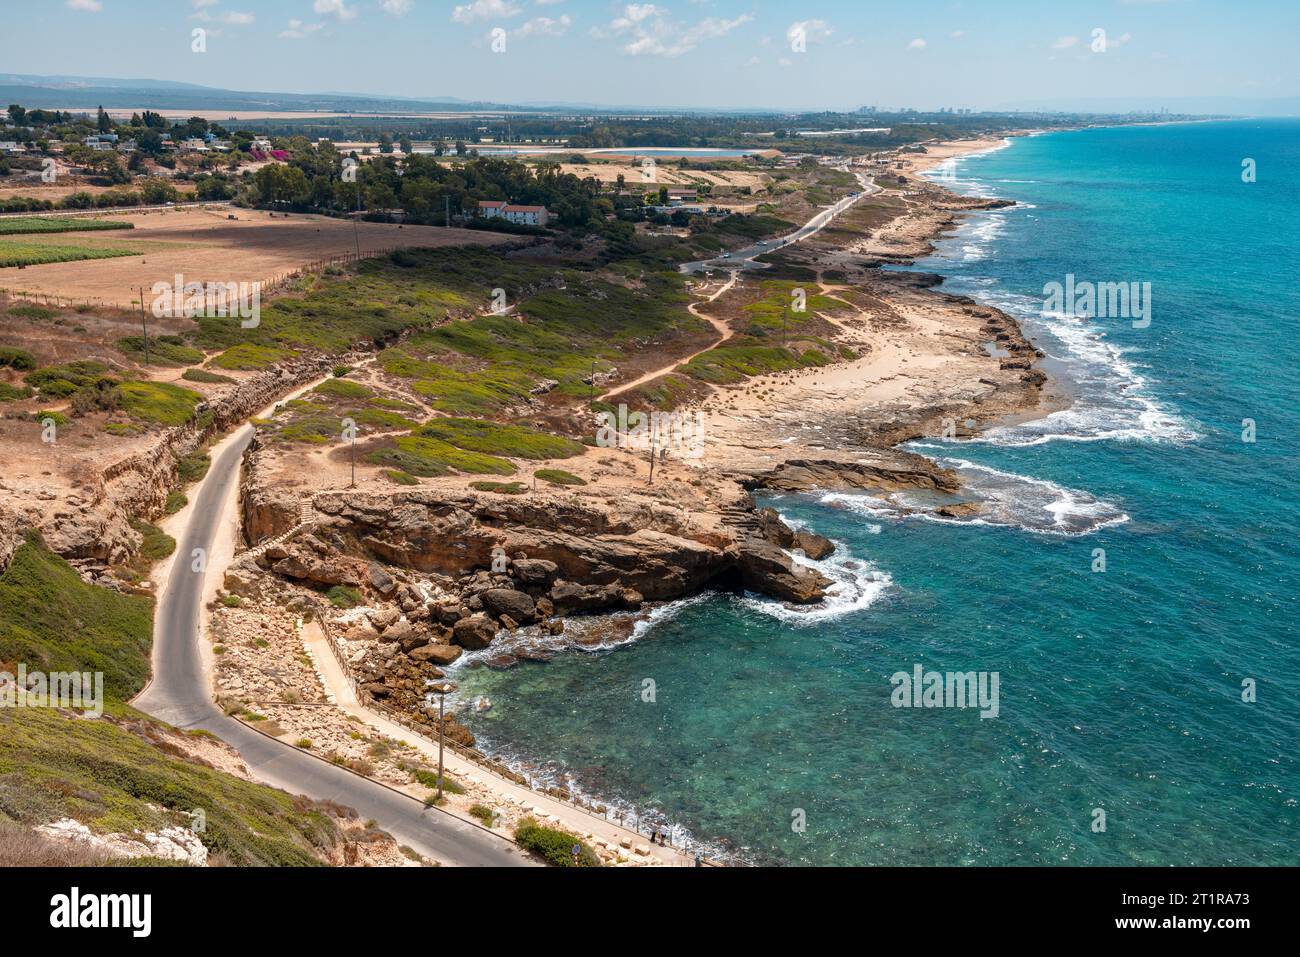 Vista aerea di Rosh Hanikra, nel nord di Israele. Splendidi golfi e mare con acqua turchese Foto Stock